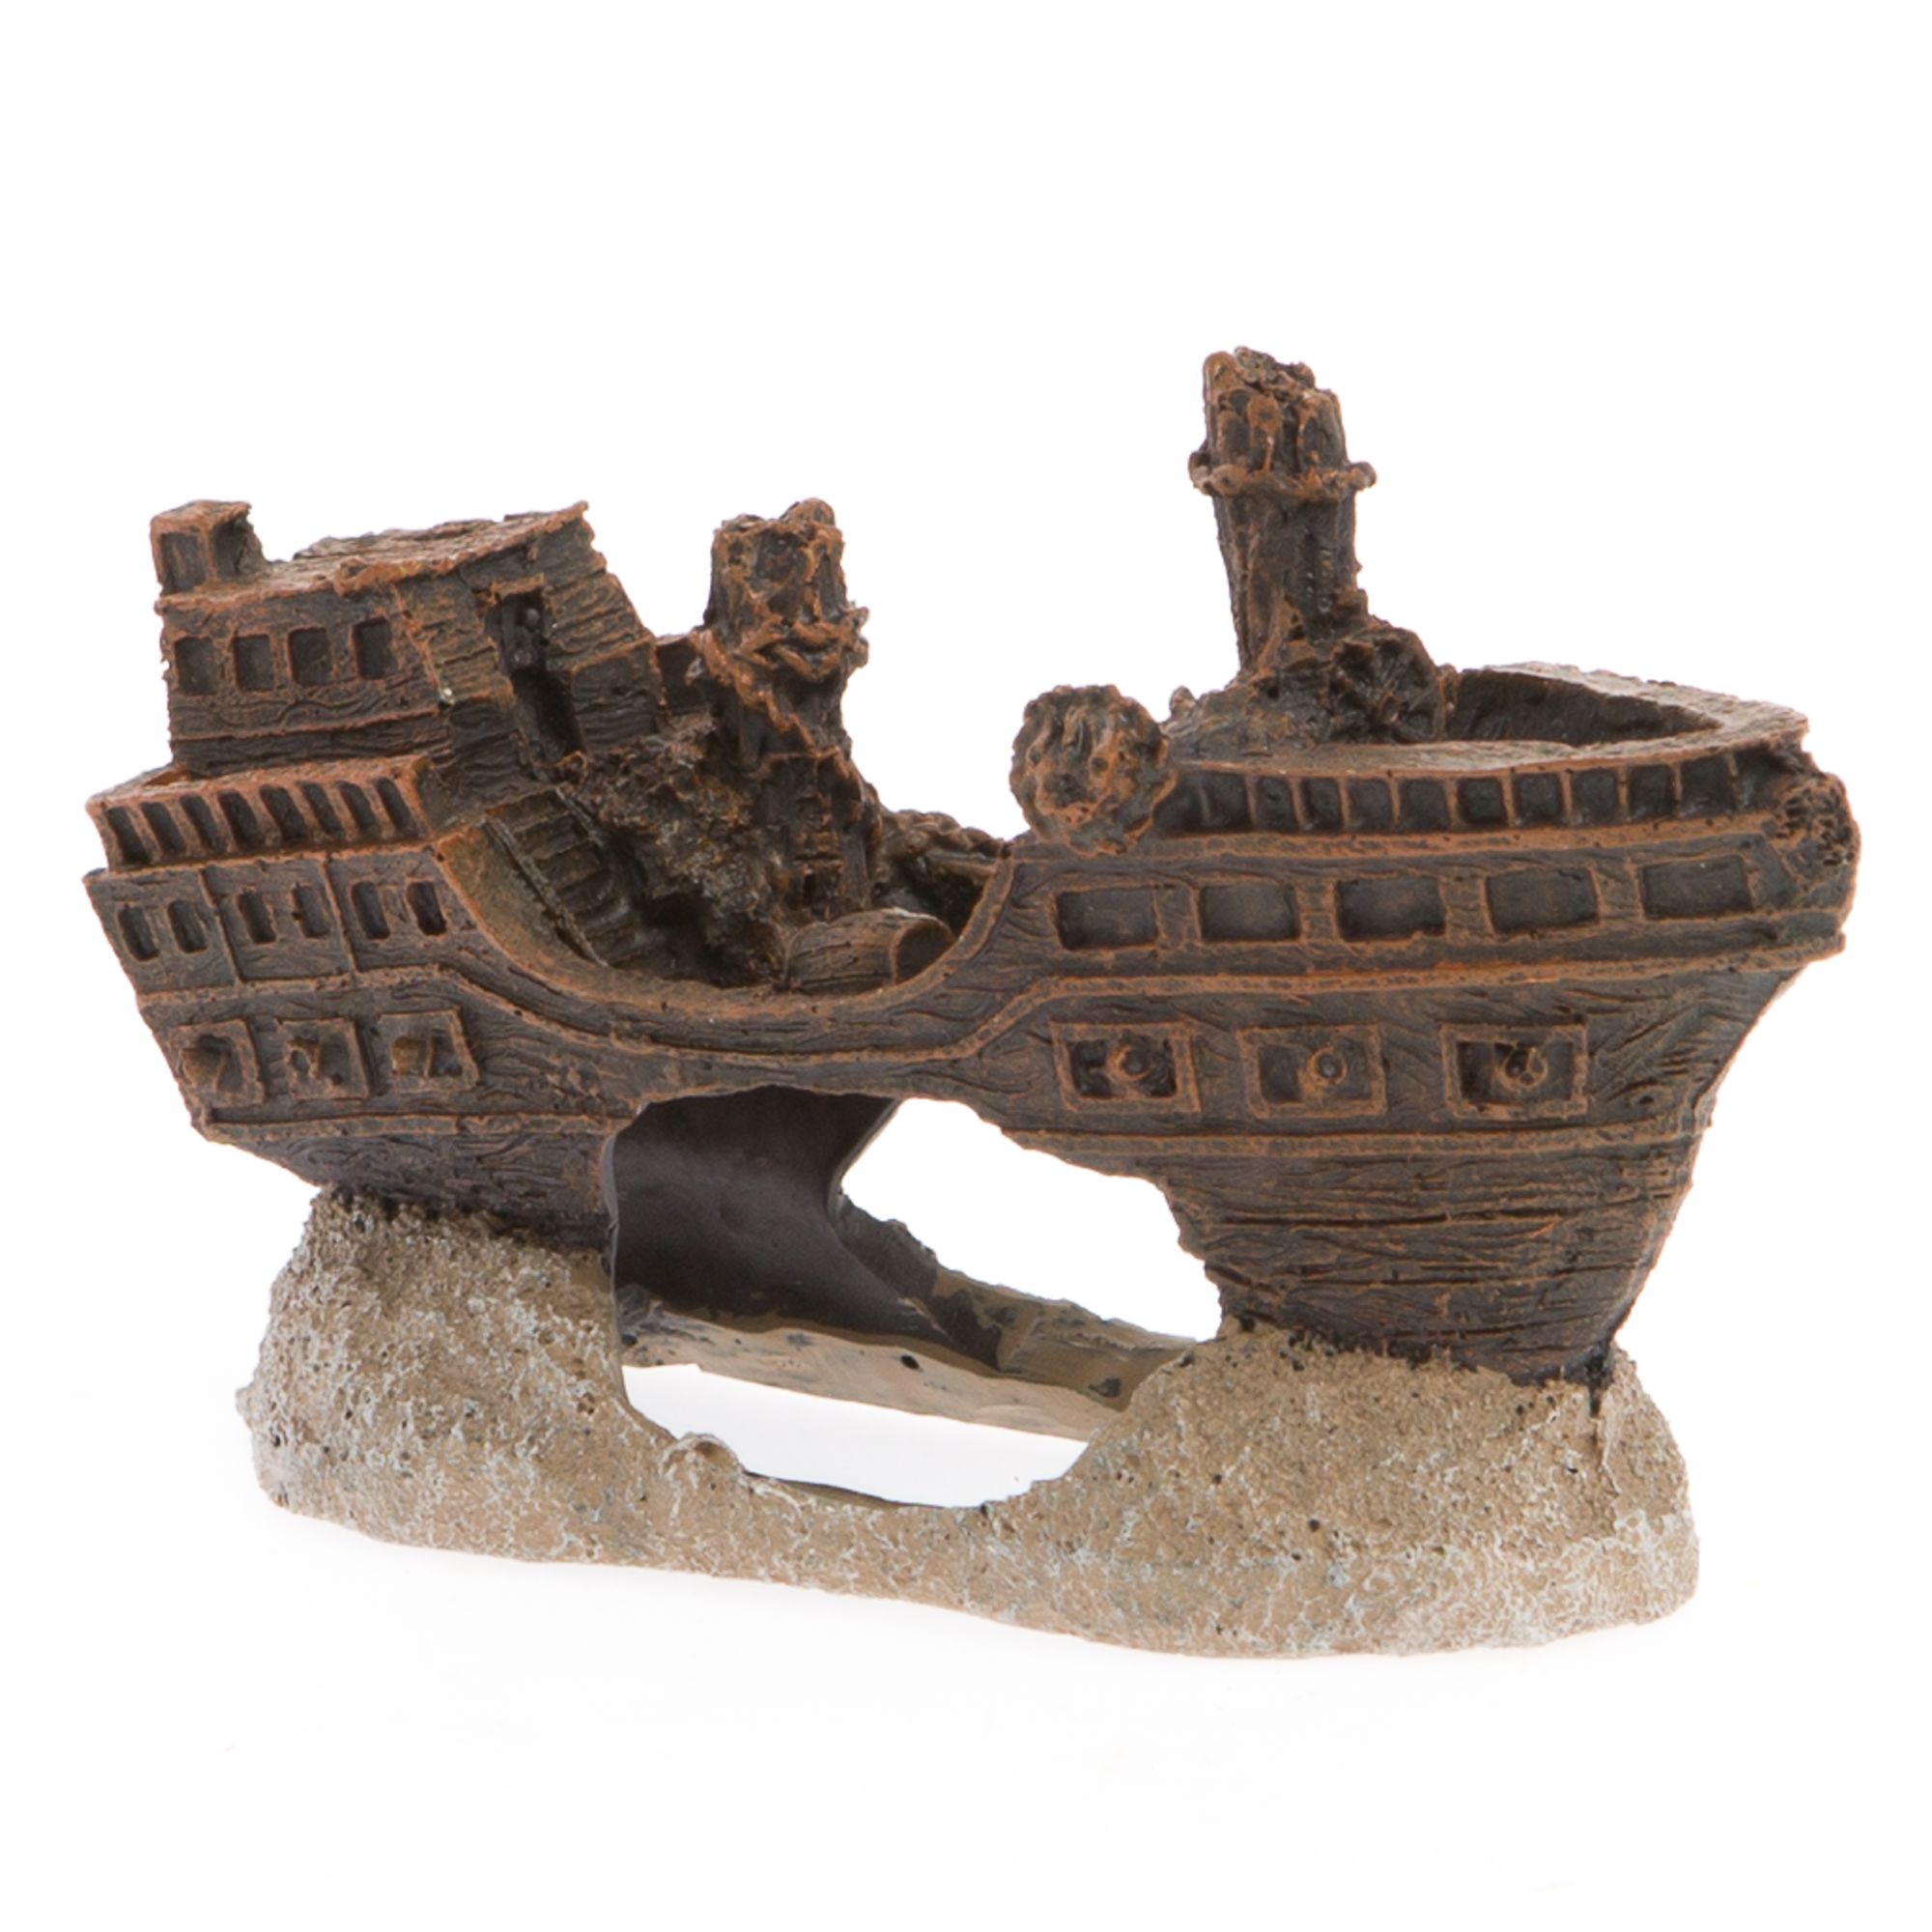 pirate ship bow ornament